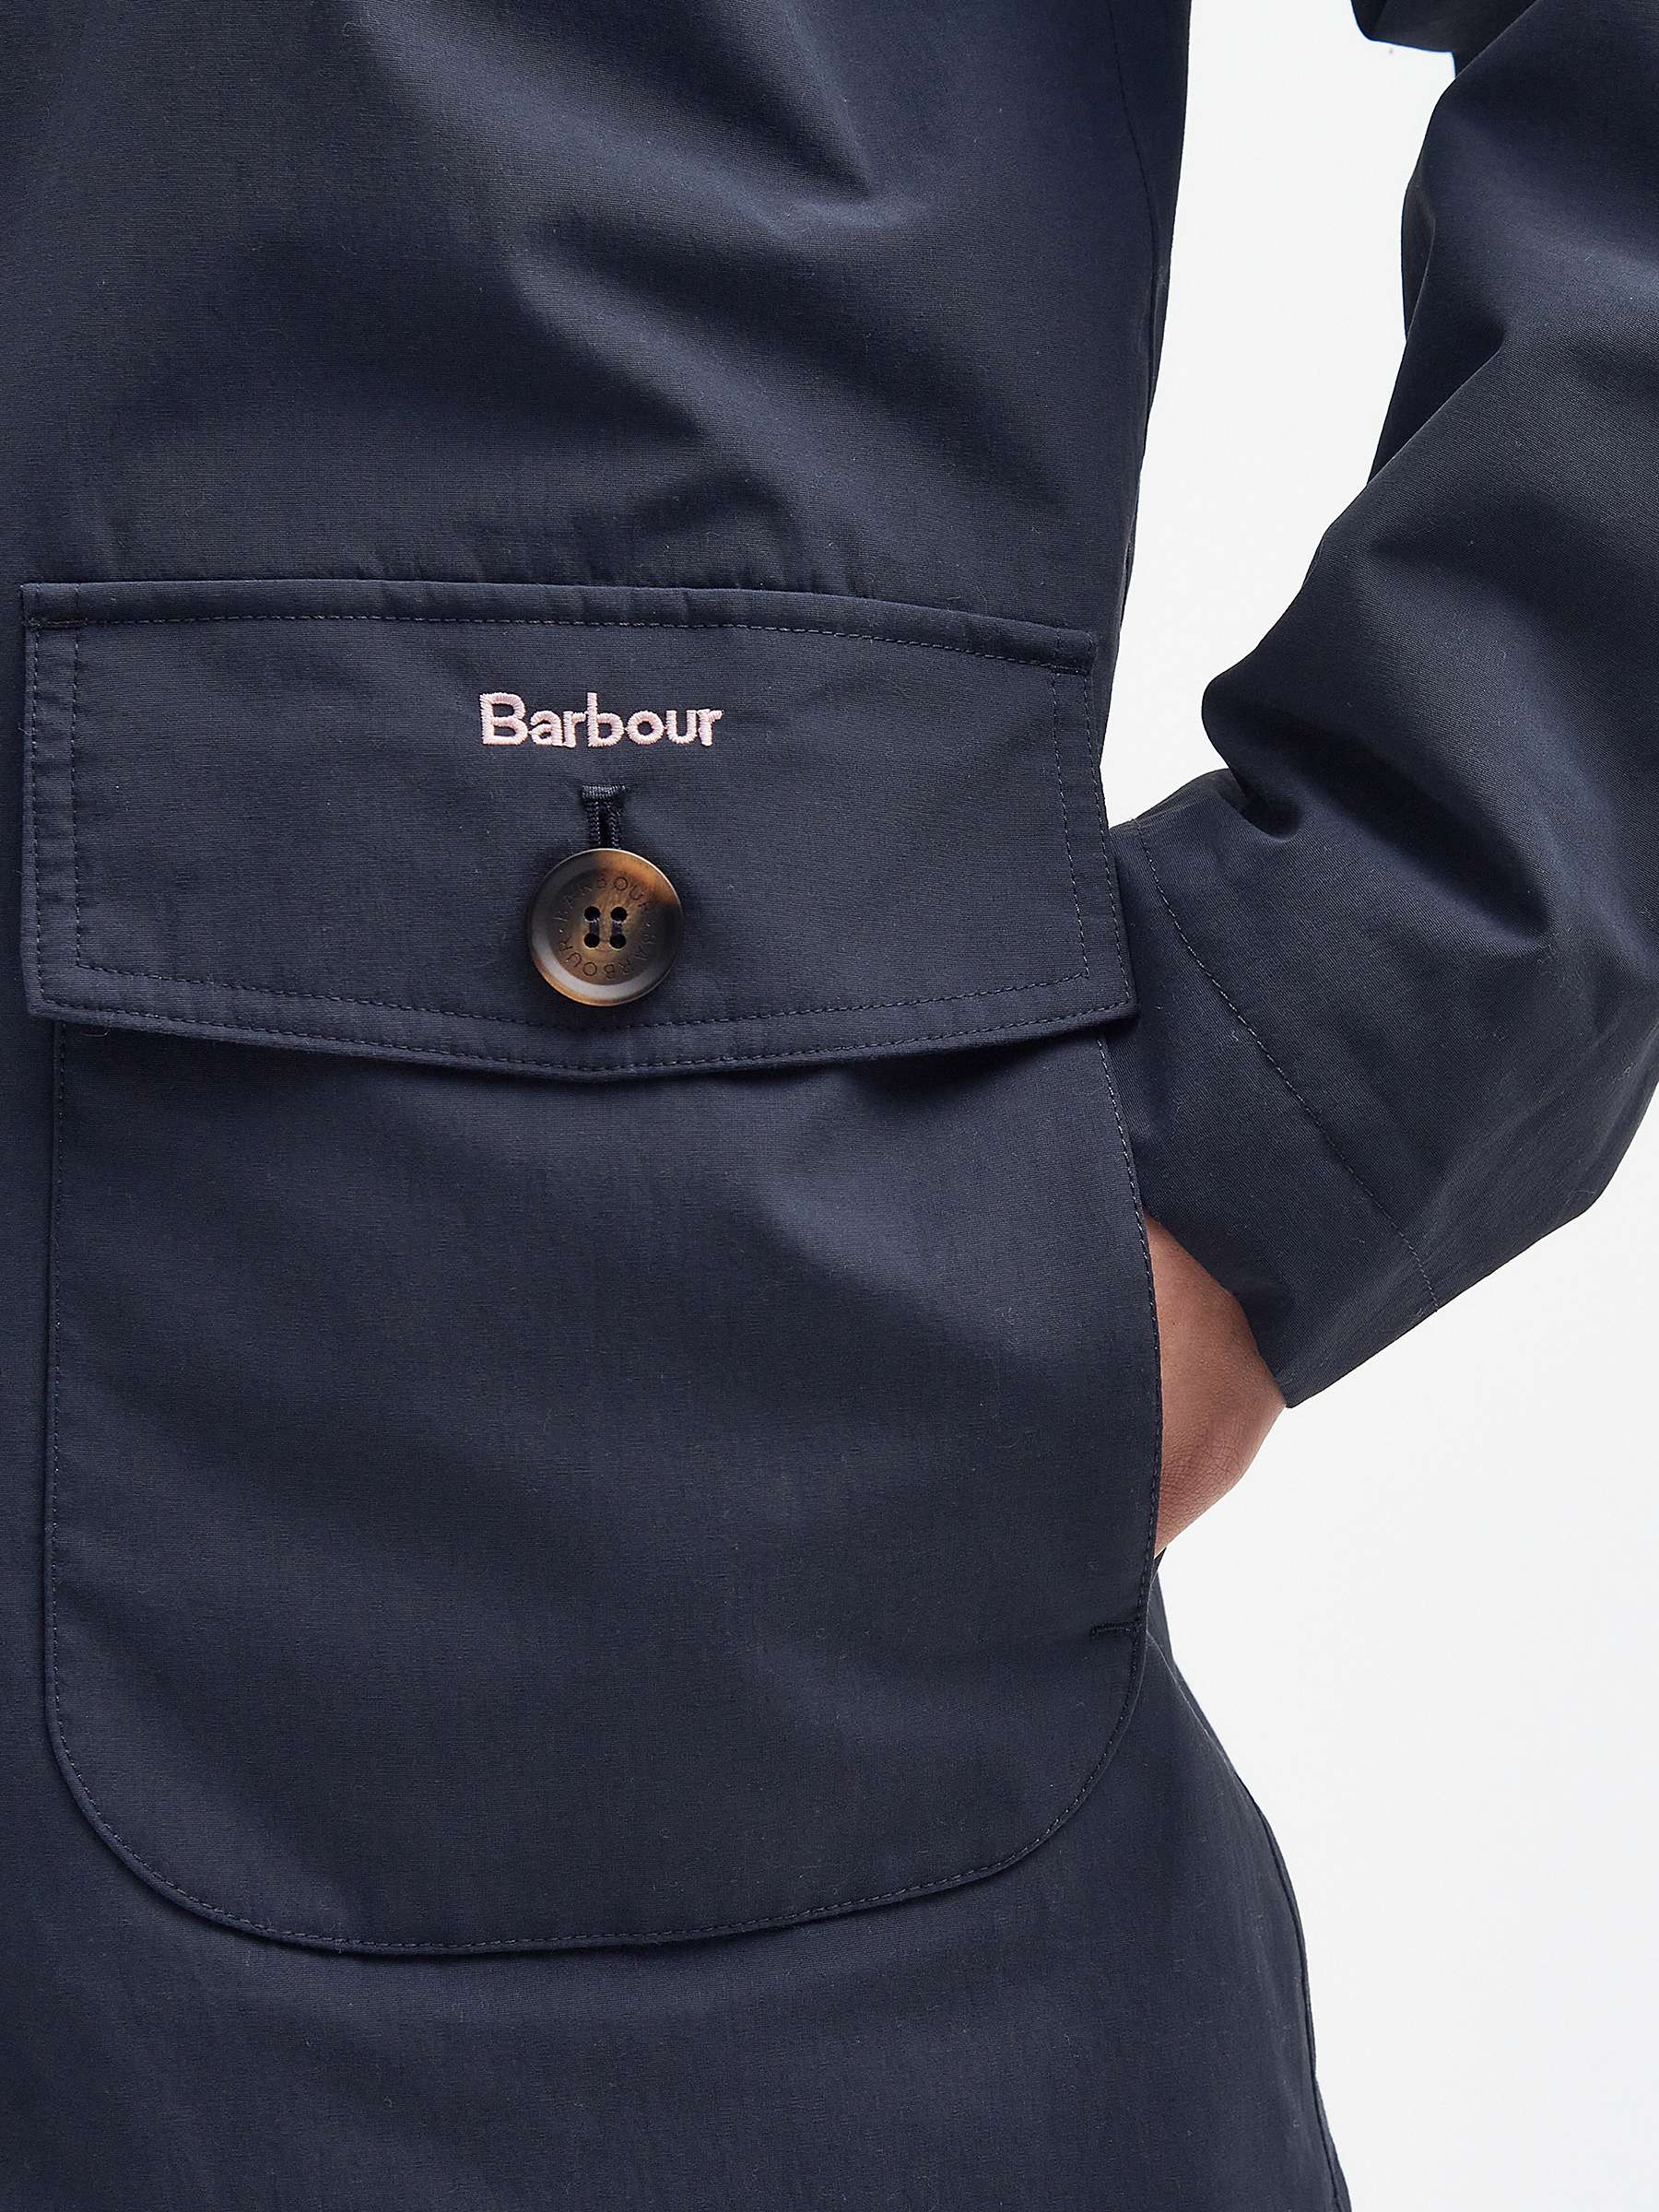 Buy Barbour Lansdowne Waterproof Jacket, Dark Navy Online at johnlewis.com